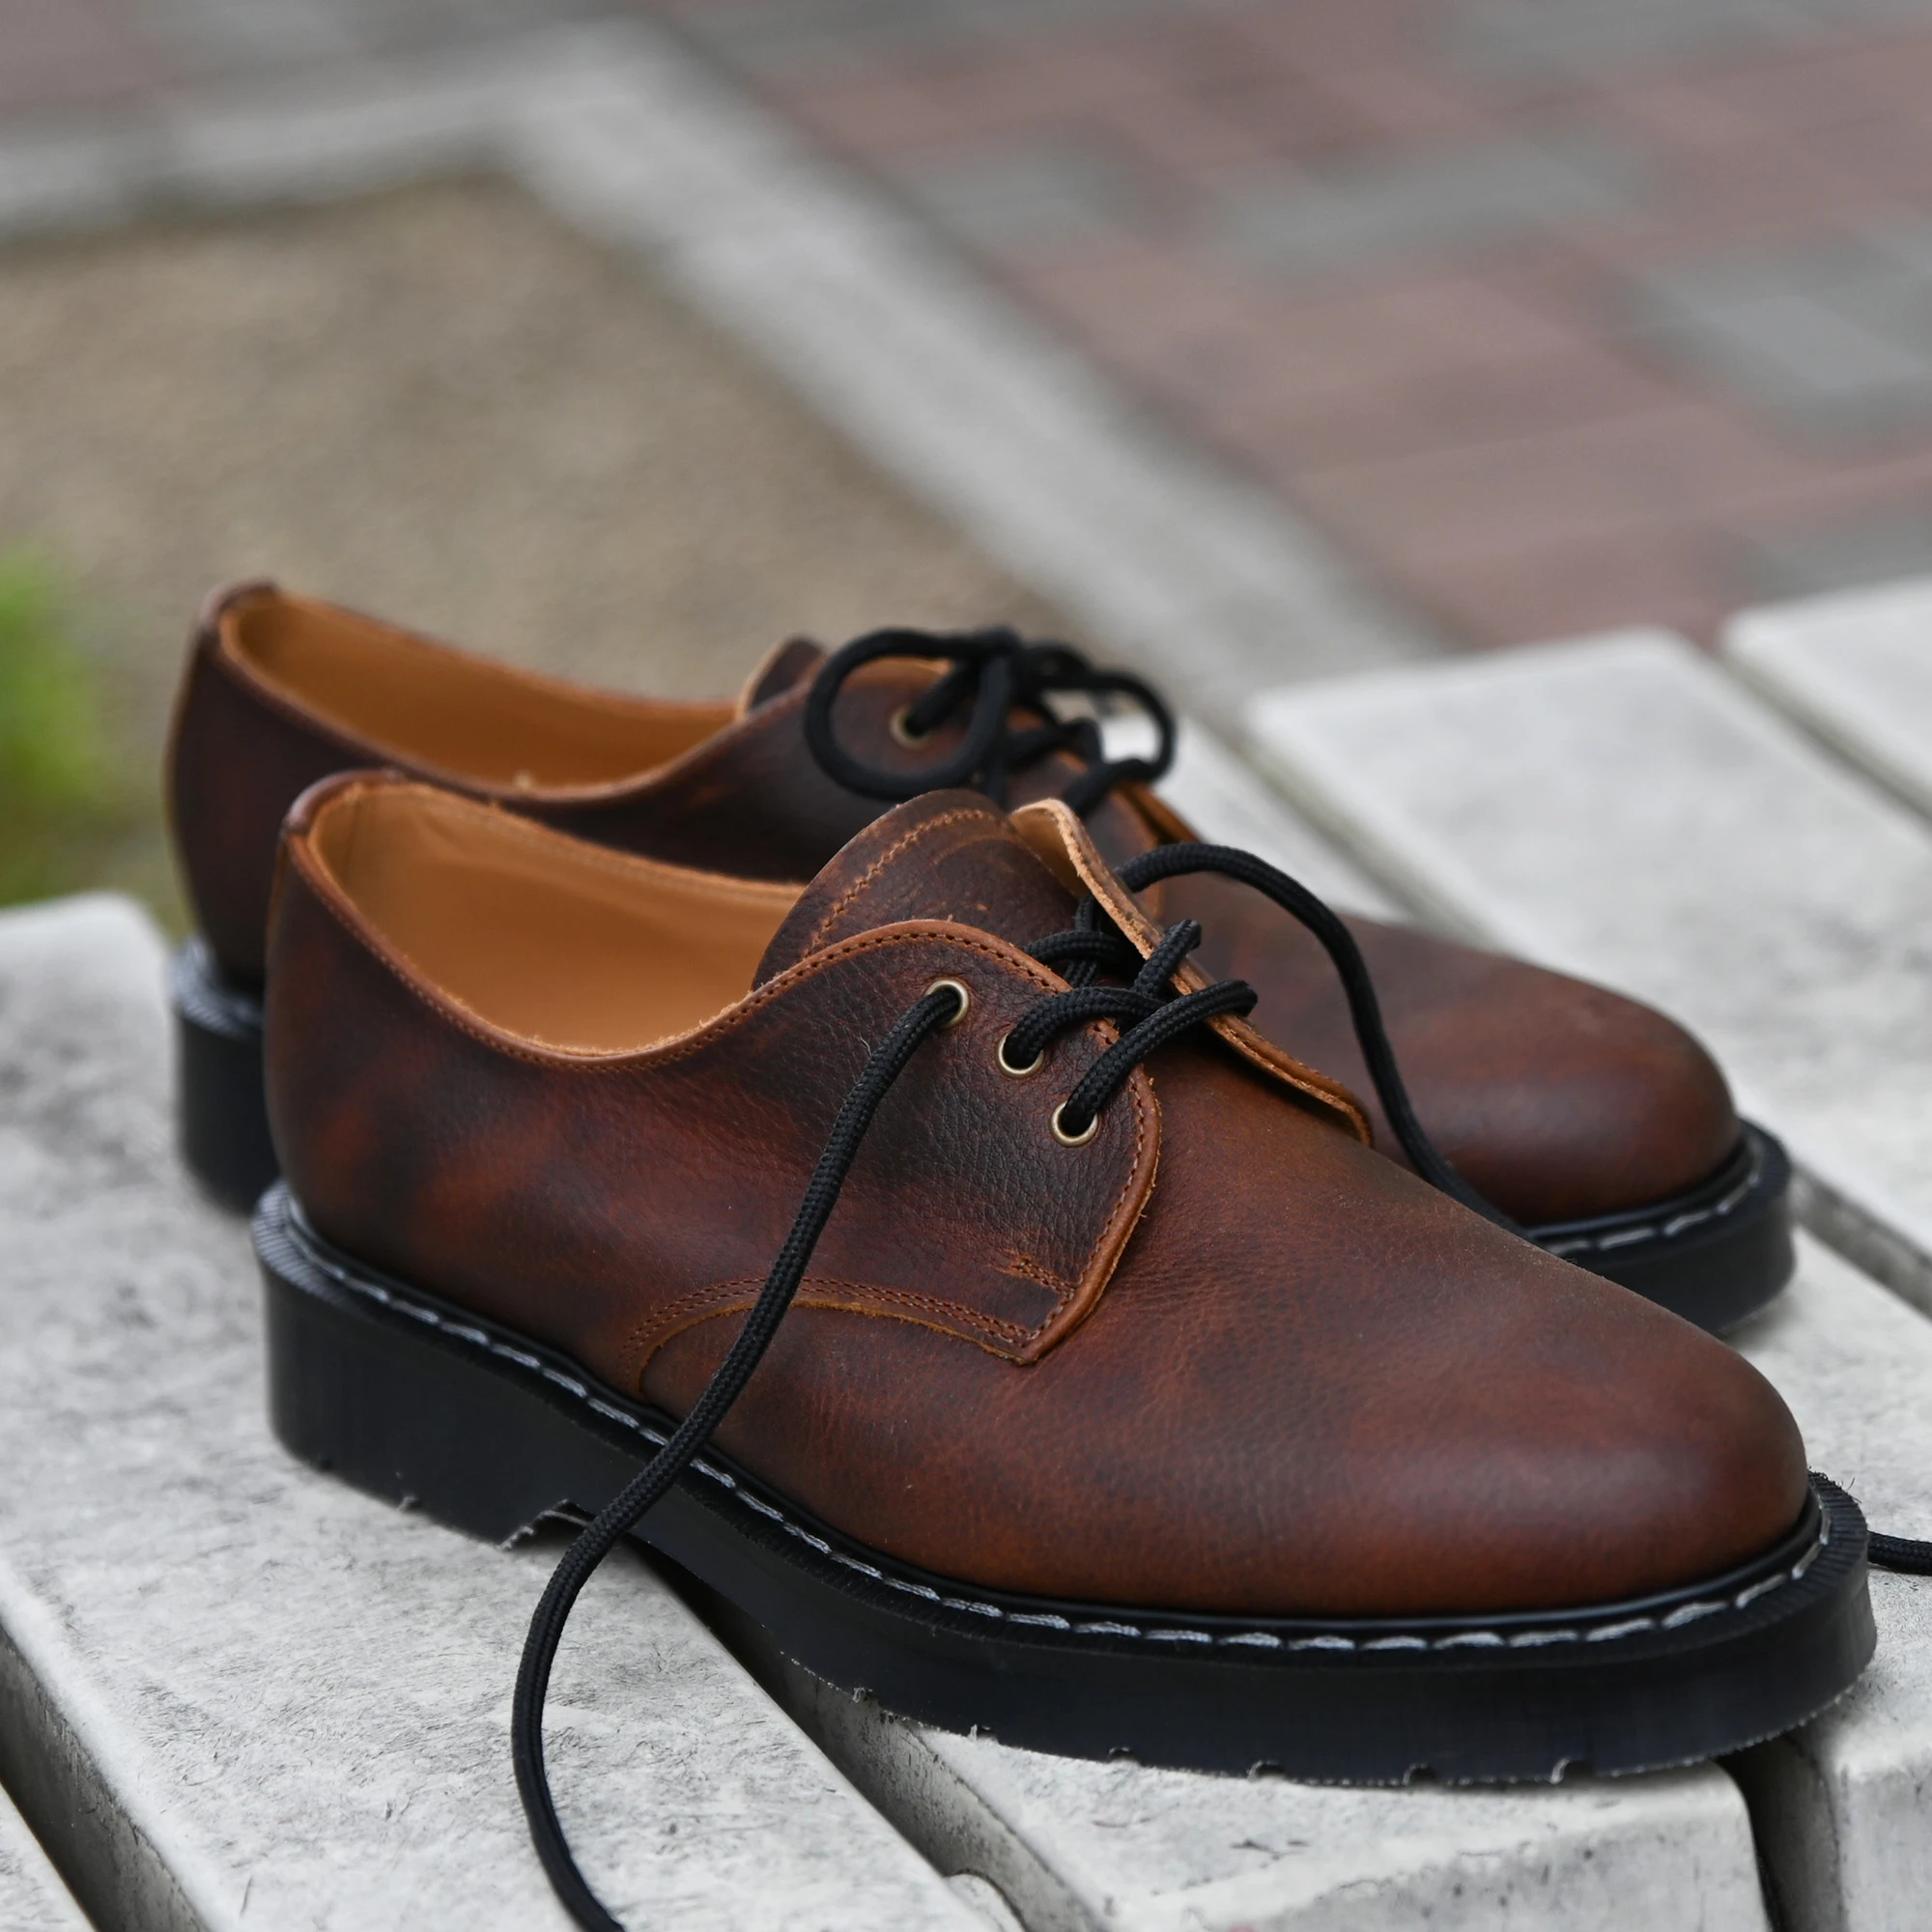 タヌキさんの革靴一覧はこちらSOLOVAIR ソロヴェアー ギブソンシューズ 革靴 プレーントゥ 英国製